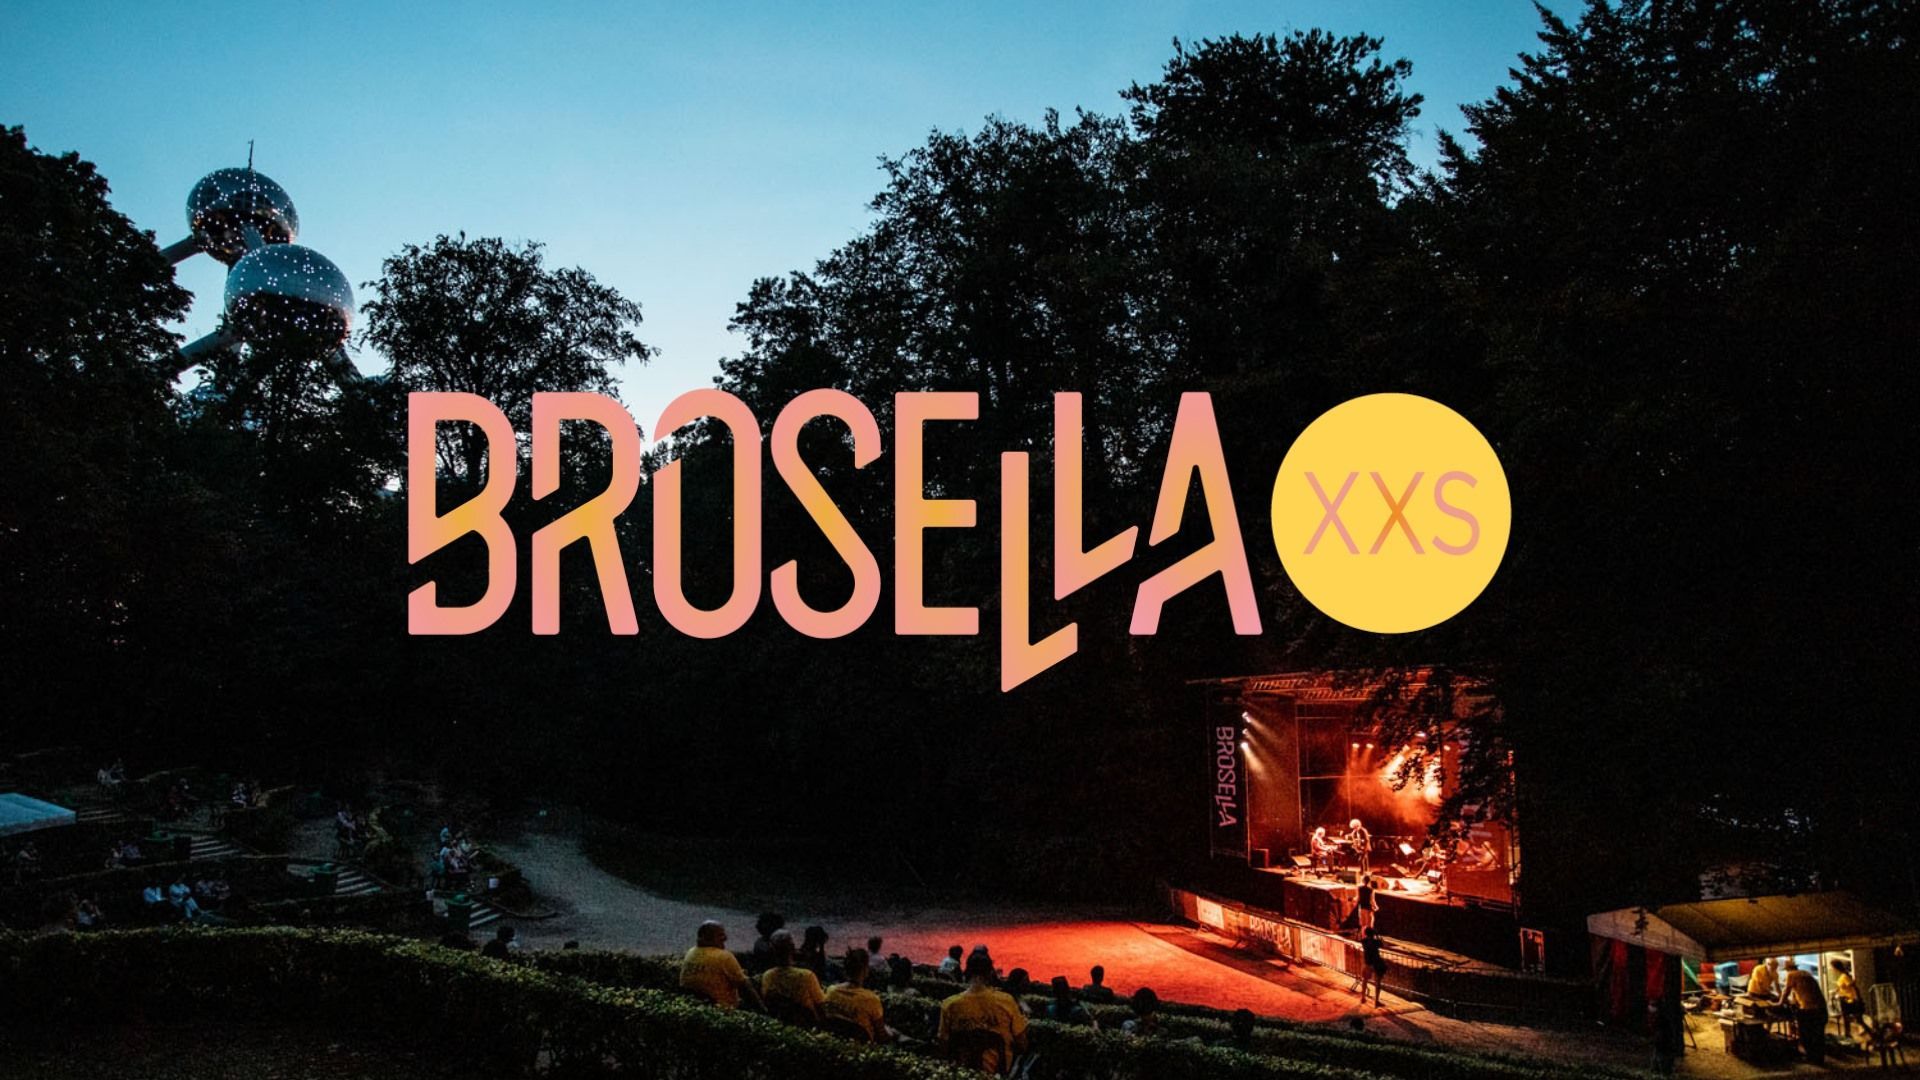 Une édition XXS du festival Brosella se tiendra du 9 au 11 juillet au Théâtre de Verdure de Laeken, au pied de l’Atomium.